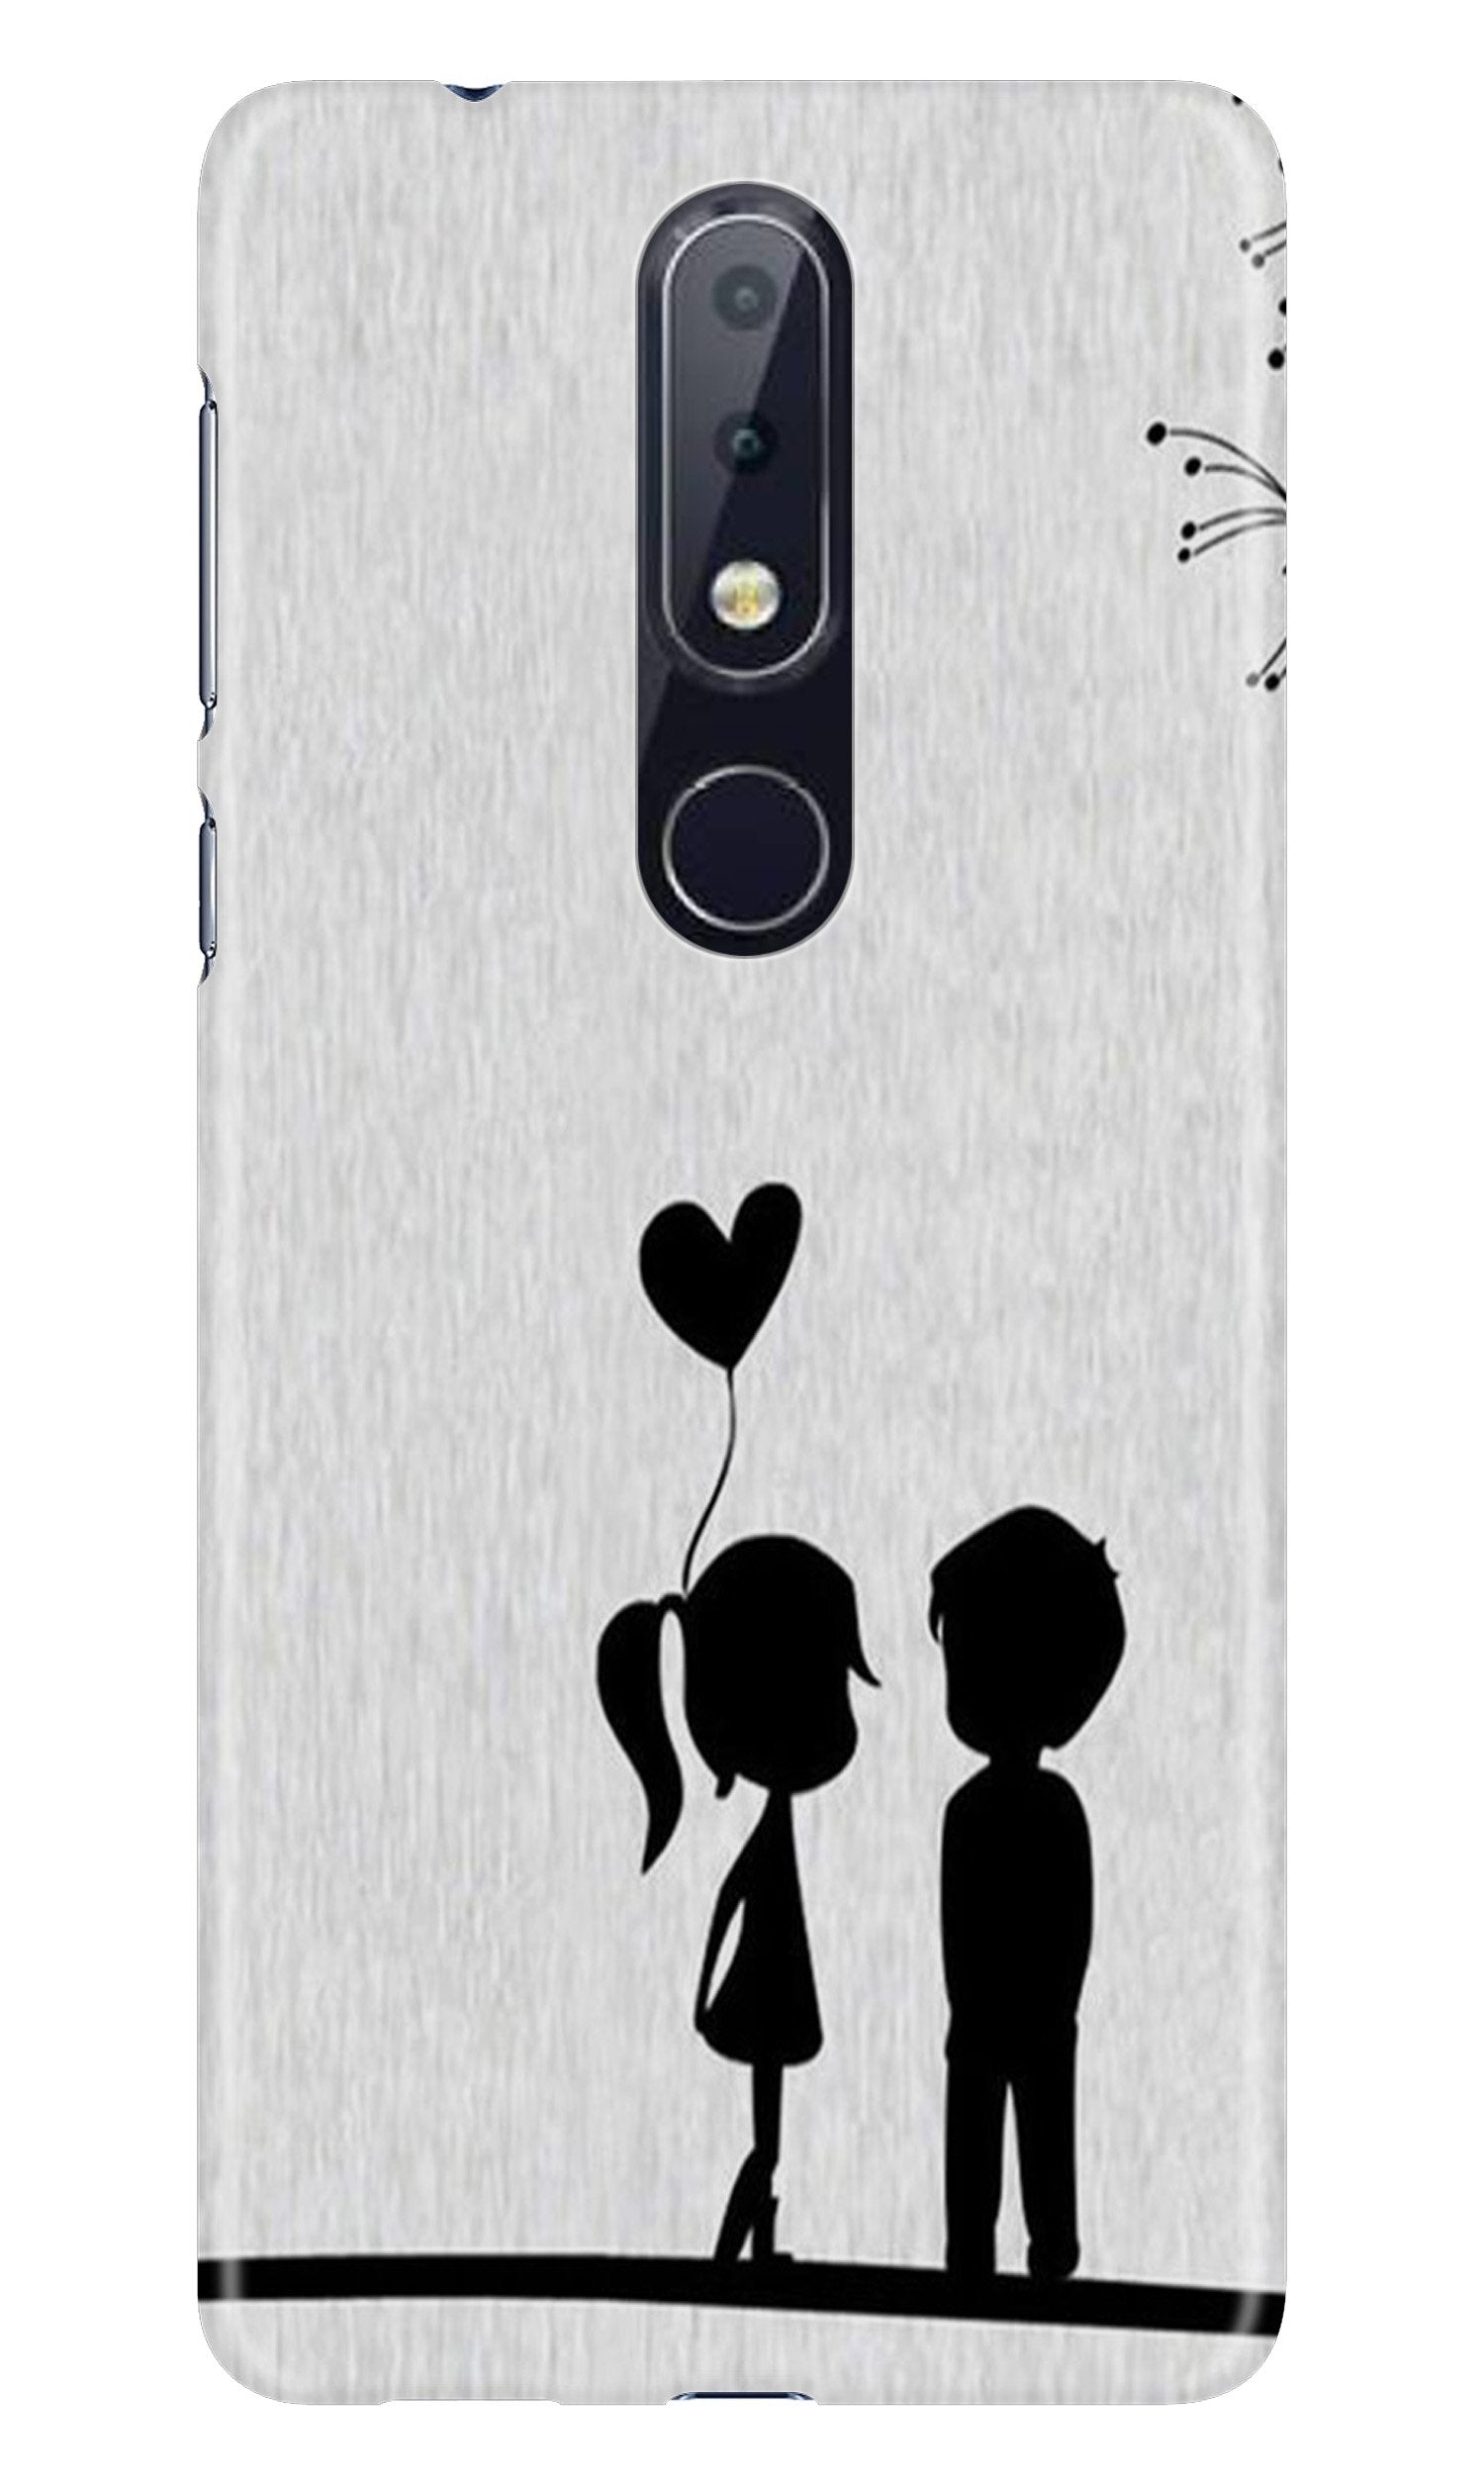 Cute Kid Couple Case for Nokia 7.1 (Design No. 283)